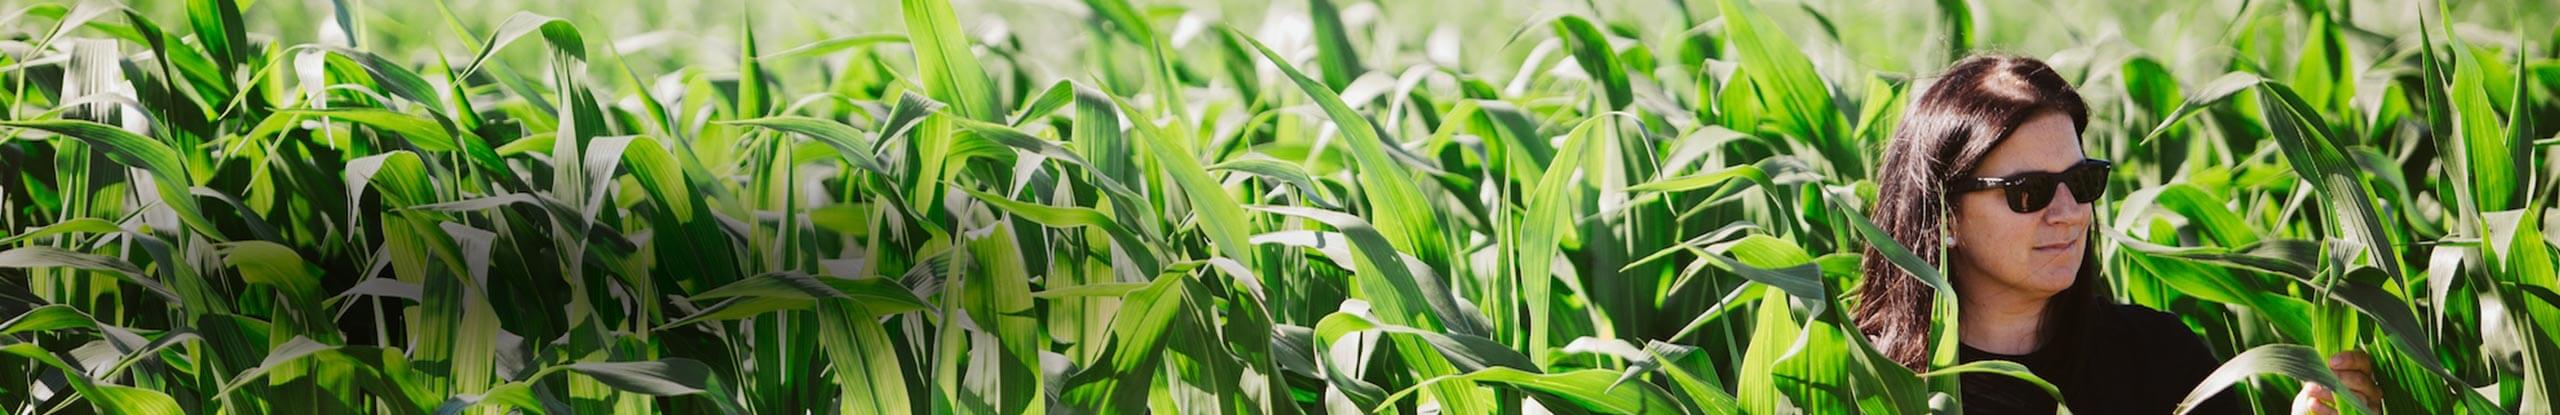 The Manitoba Corn Initiative: Optimum residue management in corn